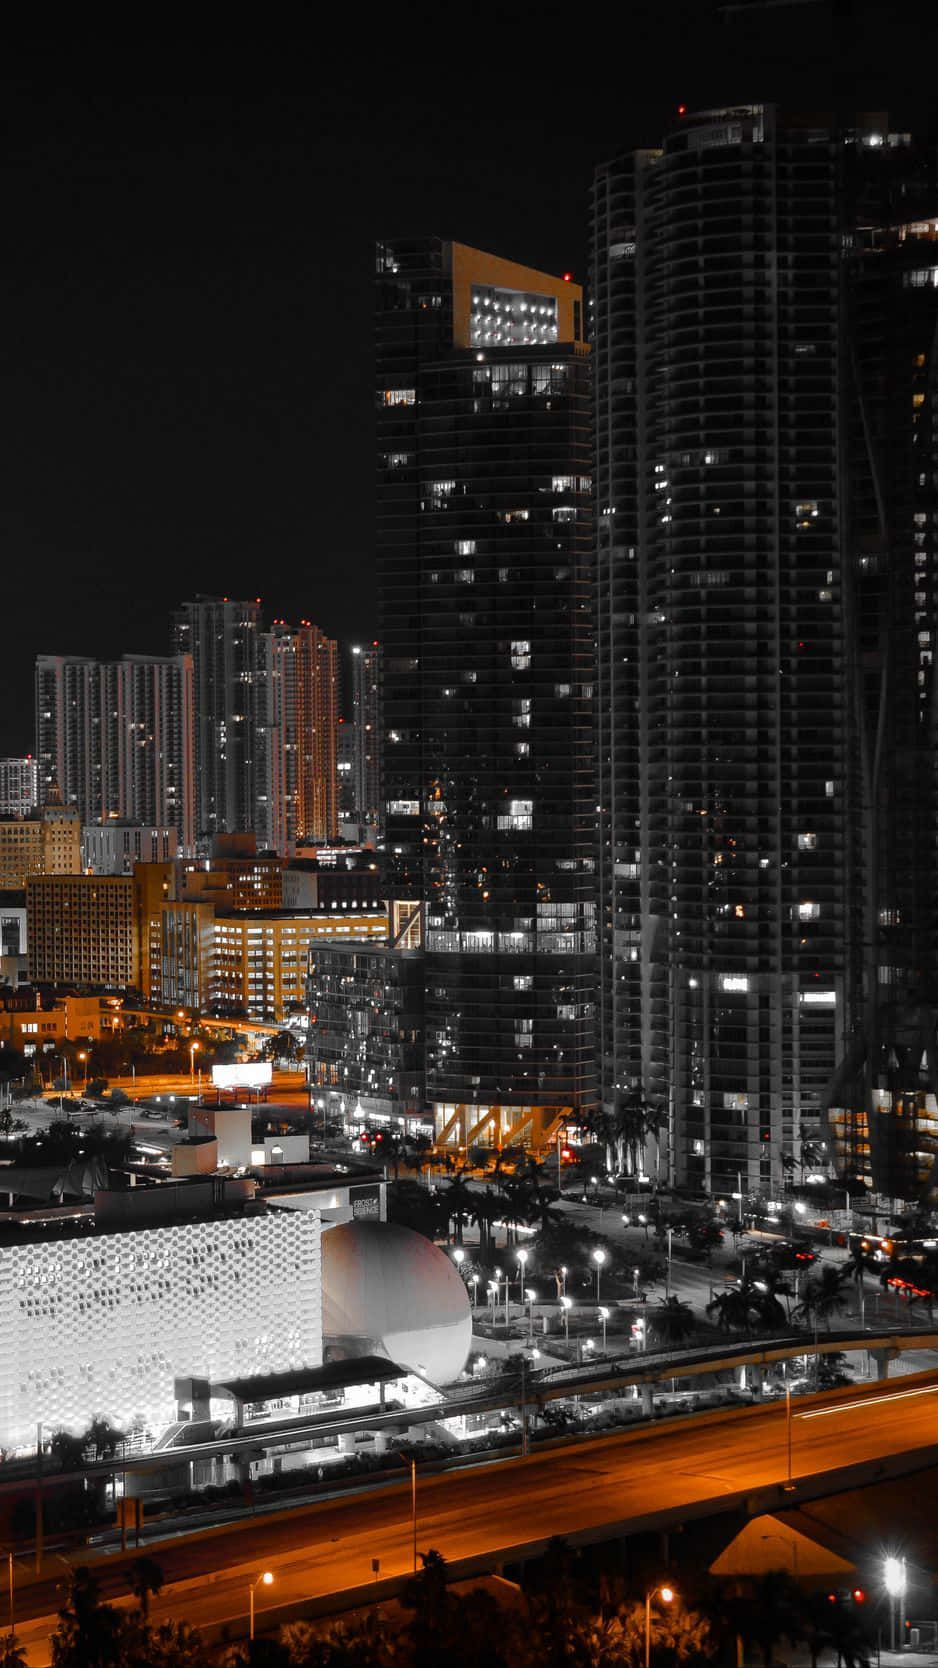 Den skønhed af Miami set gennem linsen af en iPhone. Wallpaper